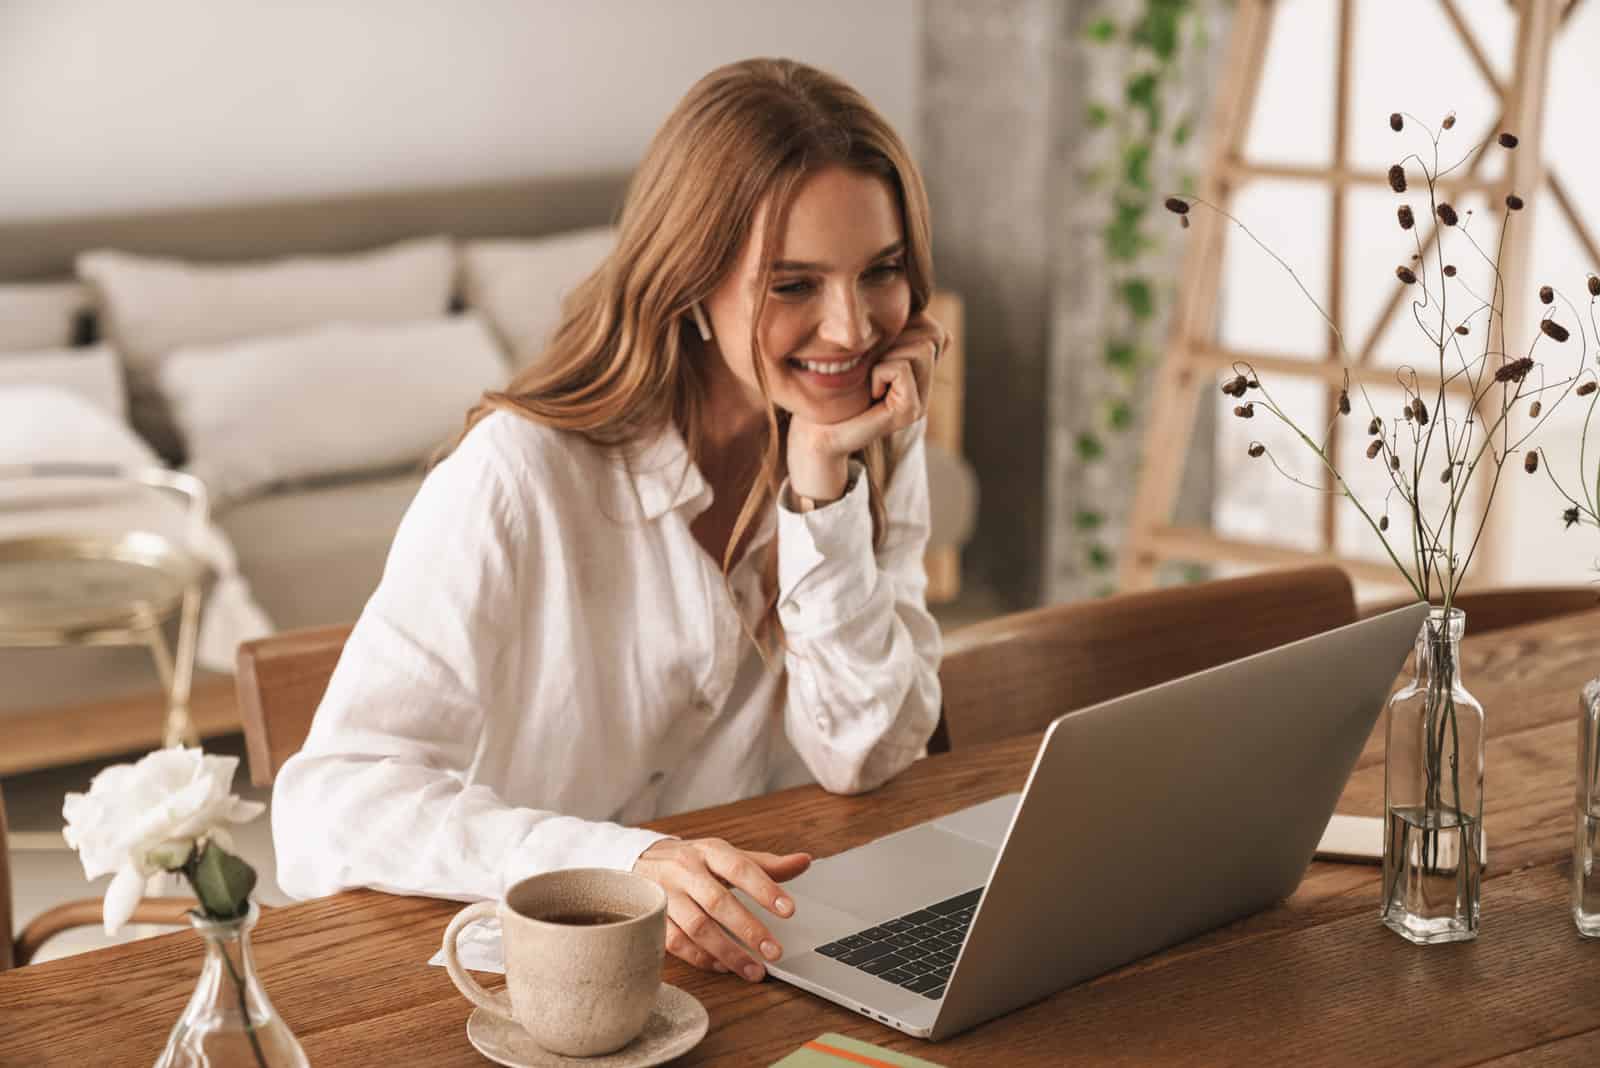 una donna sorridente con lunghi capelli castani è seduta dietro un computer portatile